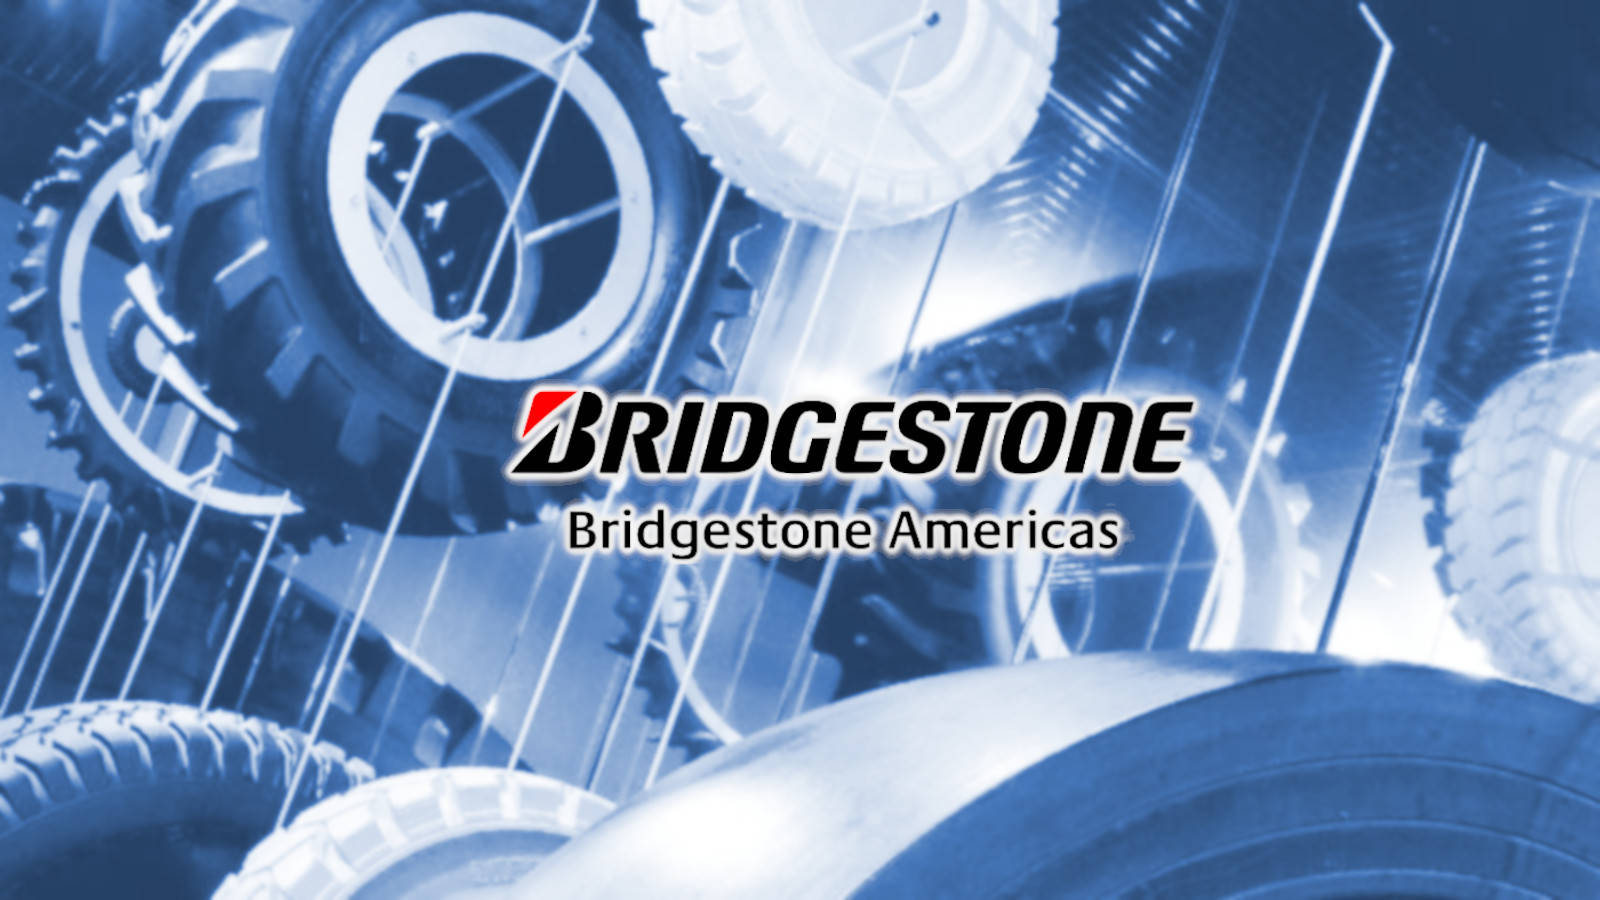 Pósterazul De Bridgestone Fondo de pantalla